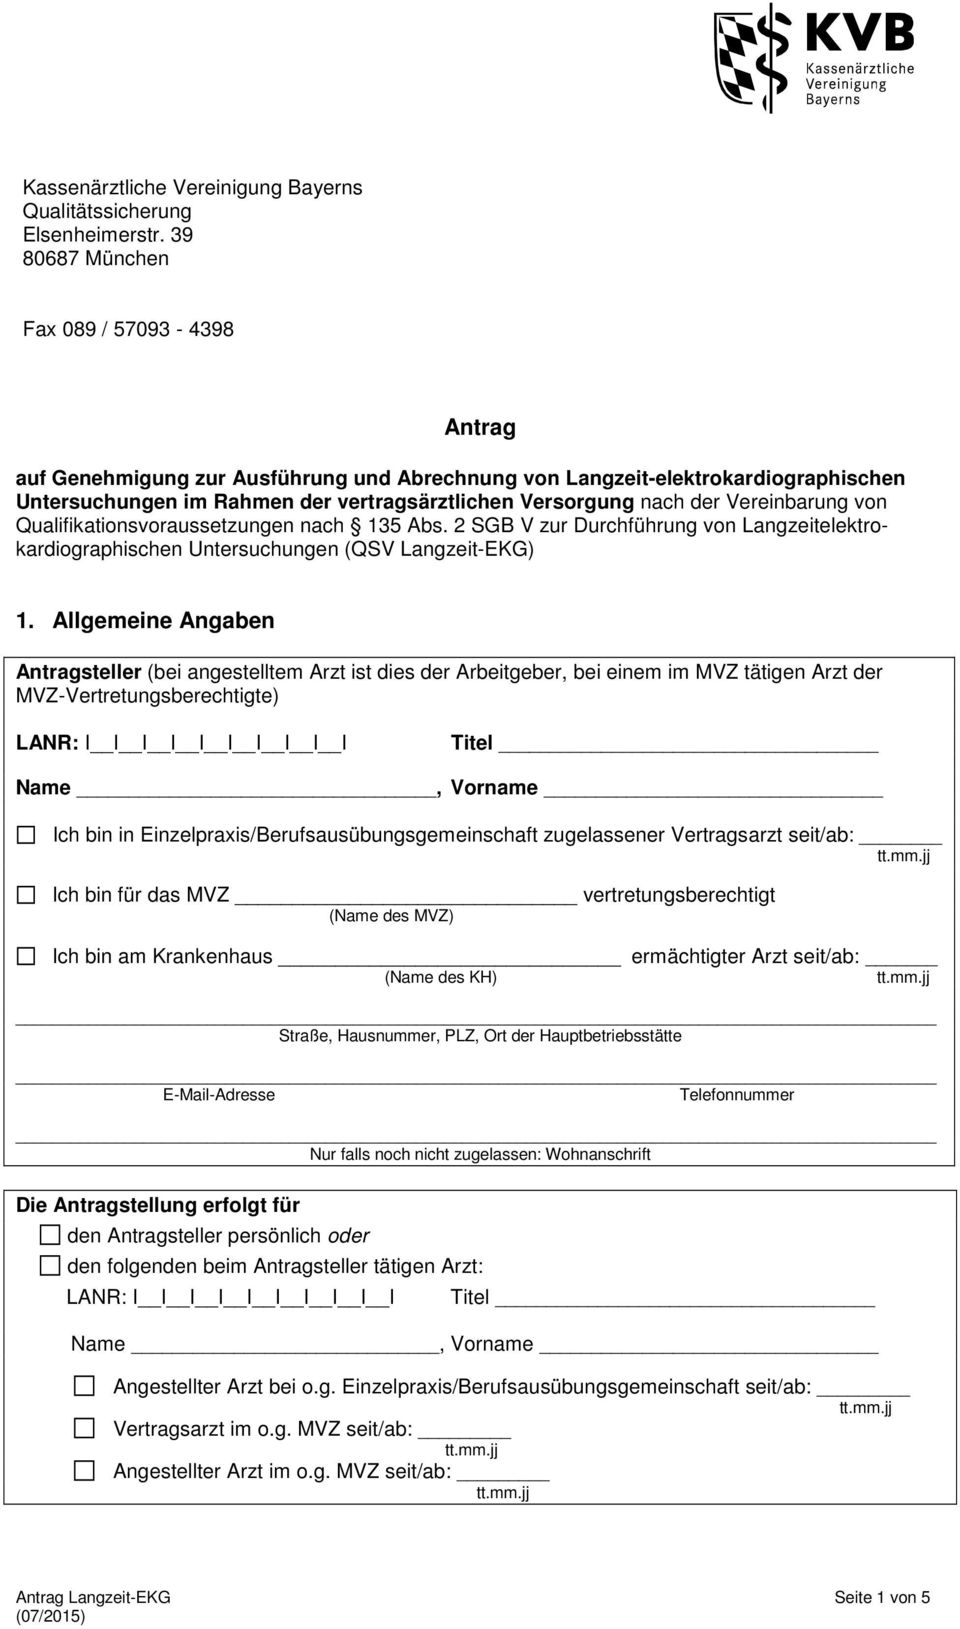 Vereinbarung von Qualifikationsvoraussetzungen nach 135 Abs. 2 SGB V zur Durchführung von Langzeitelektrokardiographischen Untersuchungen (QSV Langzeit-EKG) 1.